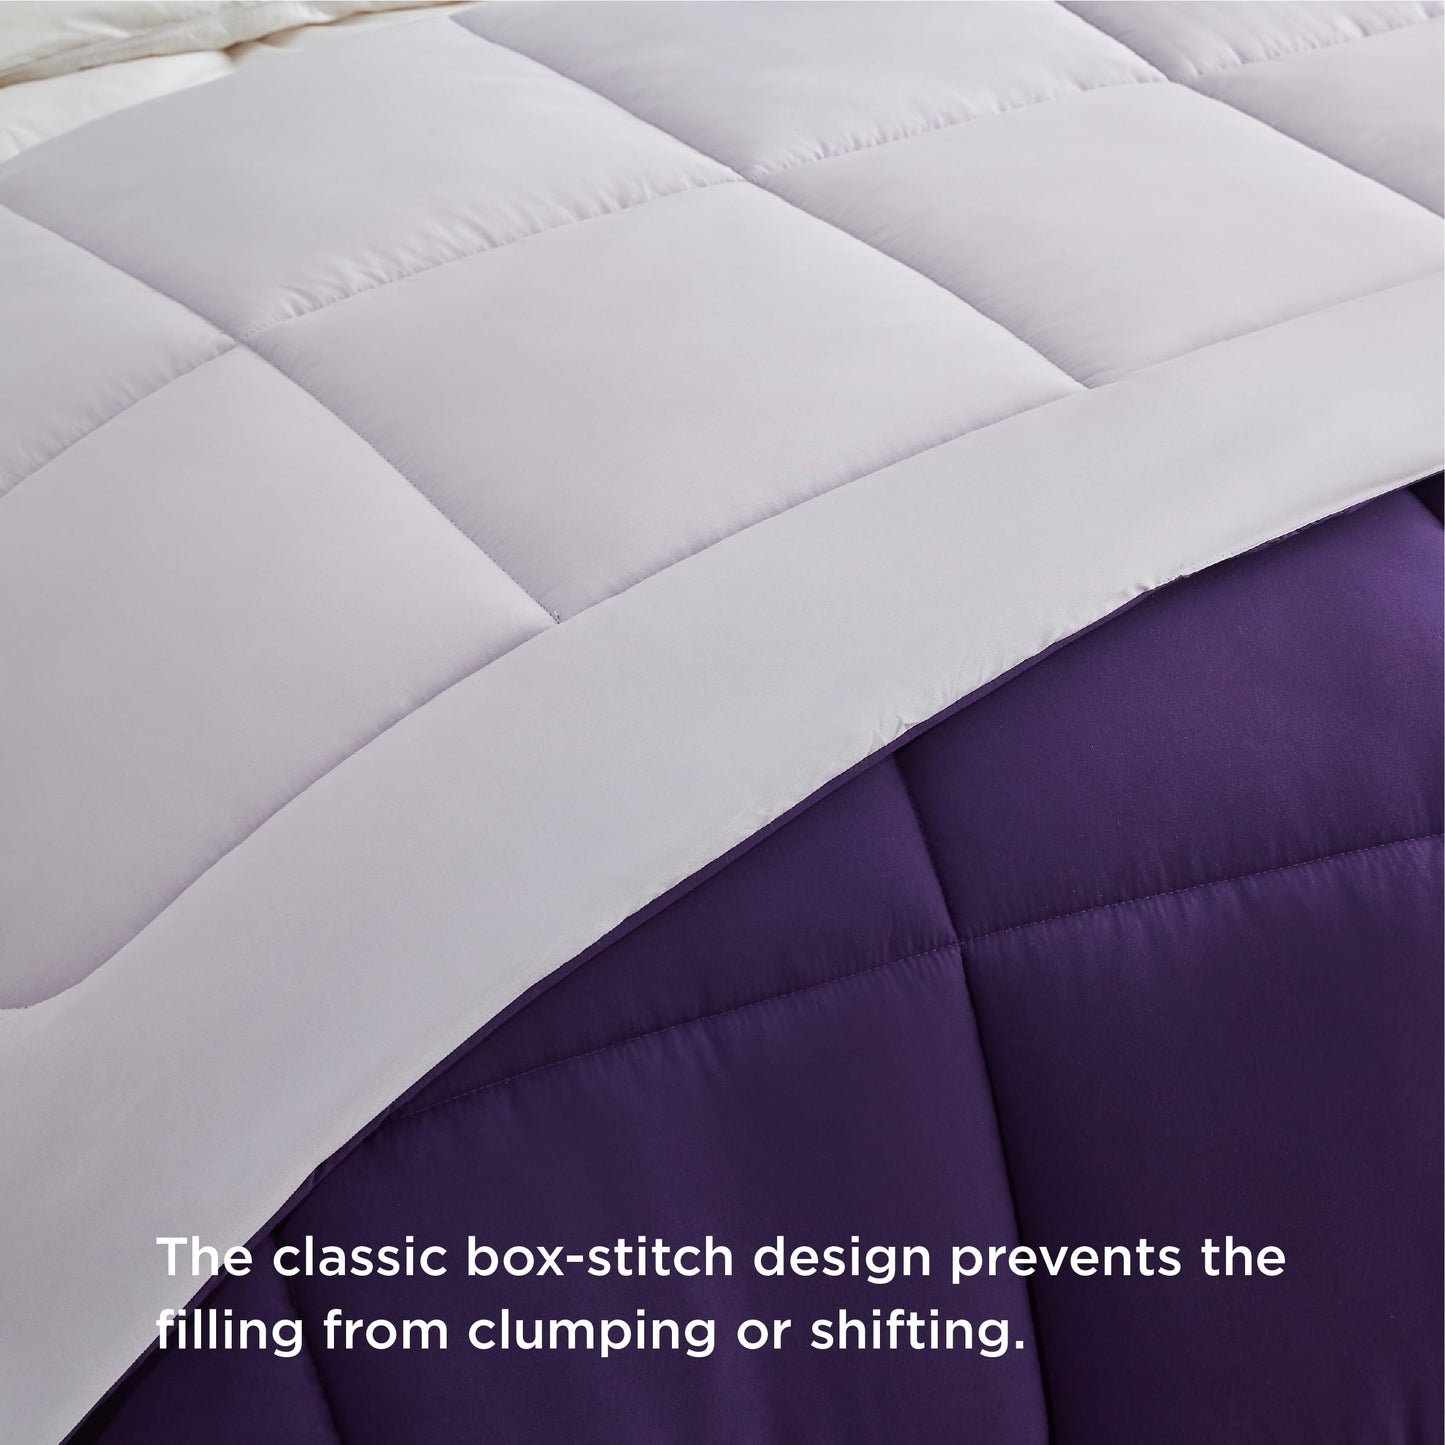 Bedsure Queen Reversible Comforter Duvet Insert - All Season Quilted Comforters Queen Size, Down Alternative Queen Size Bedding Comforter with Corner Tabs - Plum/Light Purple